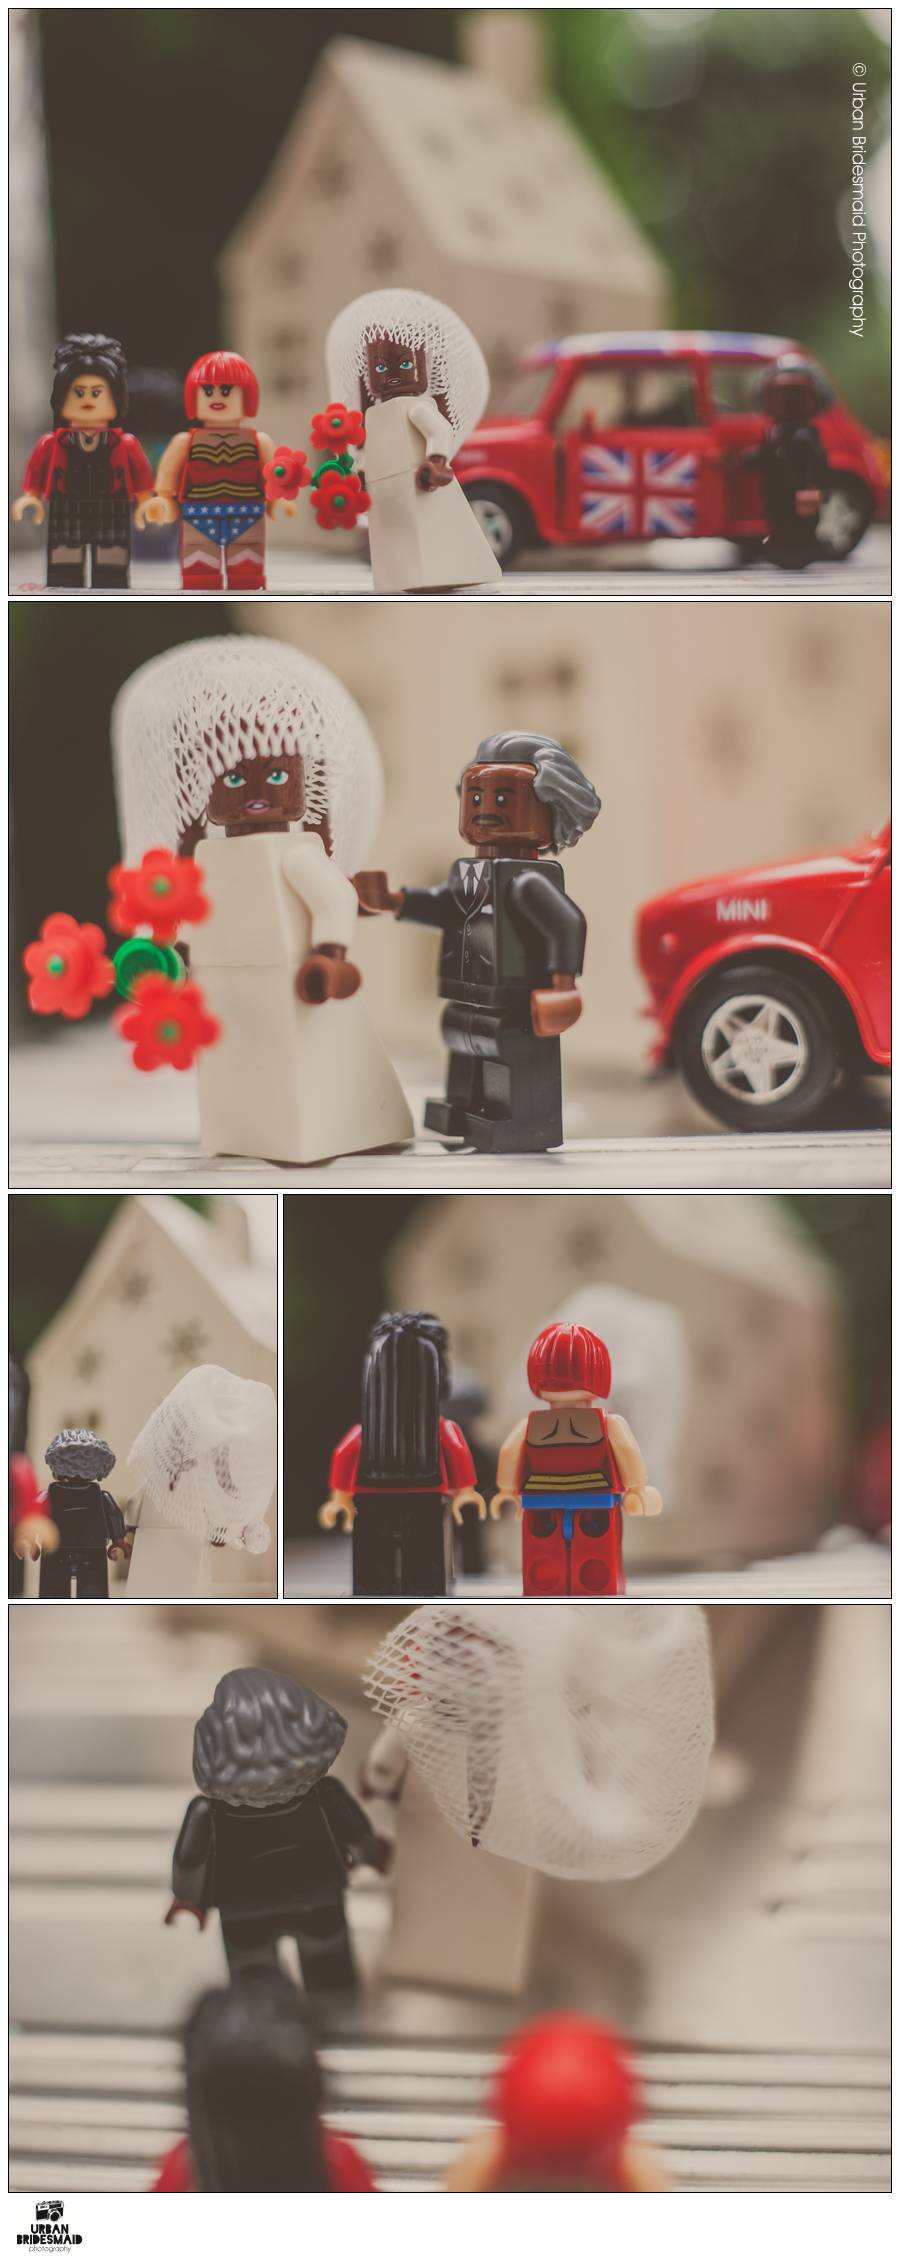 Lego-Nigerian-wedding-4 Nigerian wedding with Lego minifigures